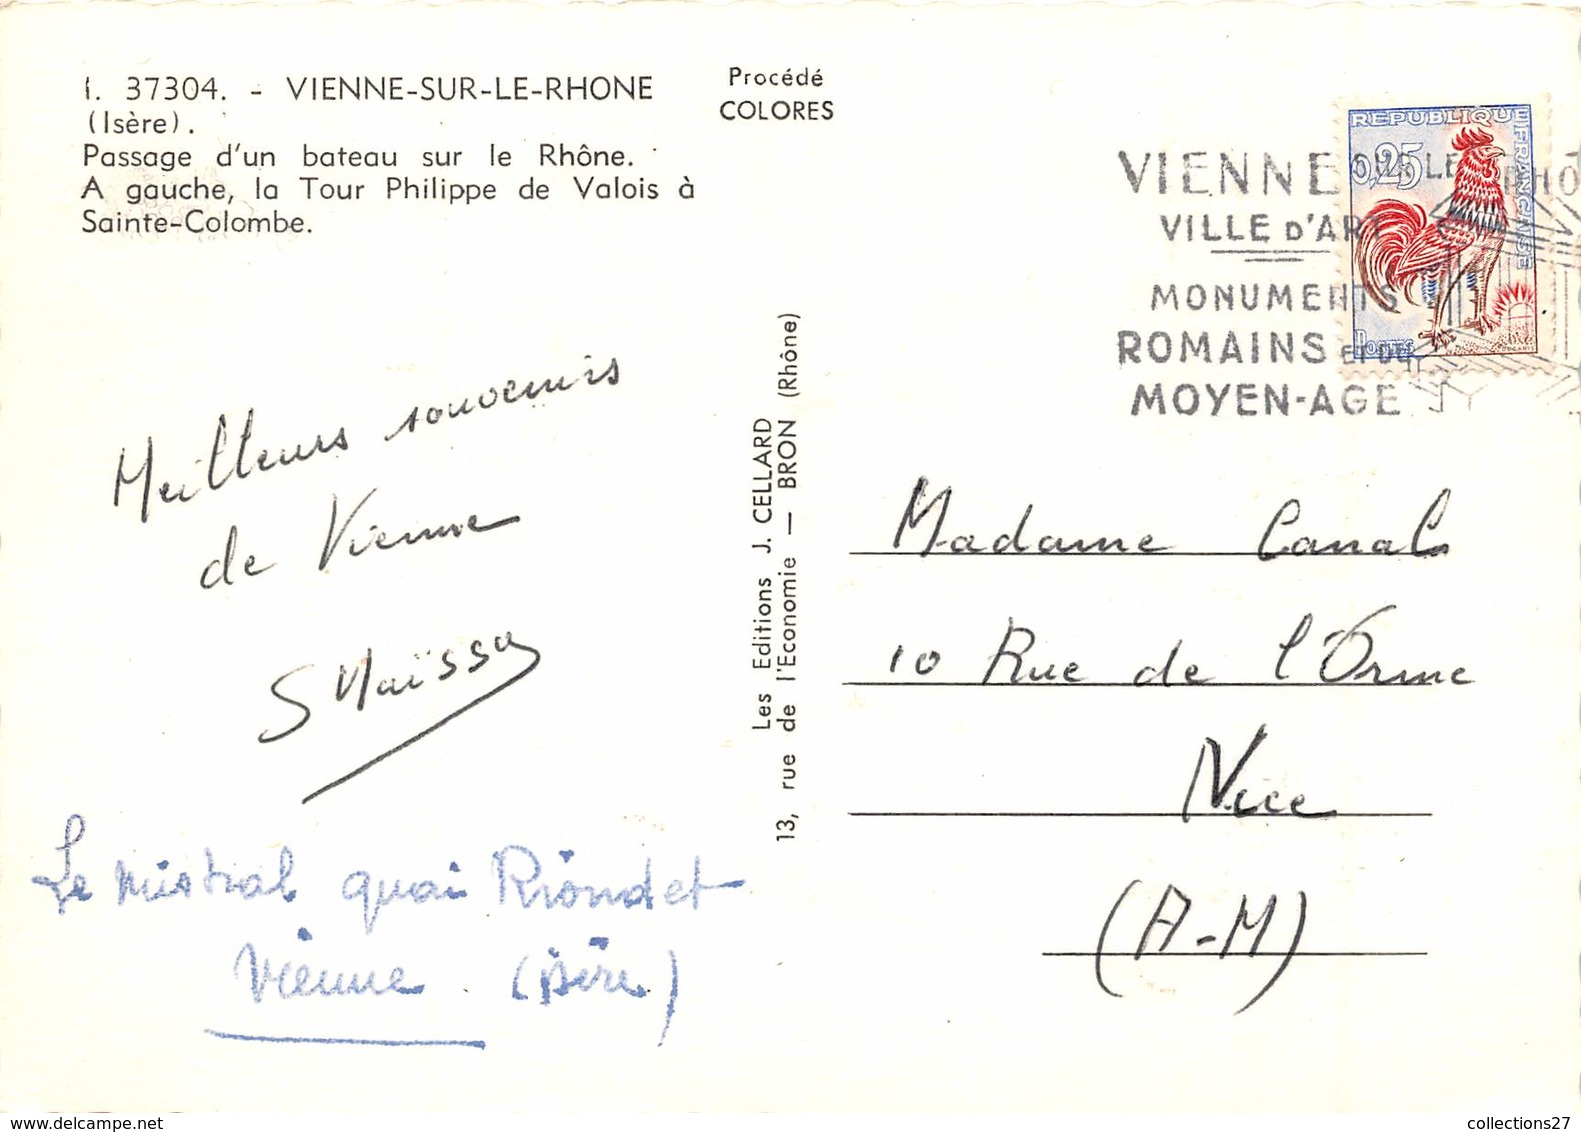 38-VIENNE-SUR-LE-RHONE- PASSAGE D'UN BATEAU SUR LE RHONE - Vienne